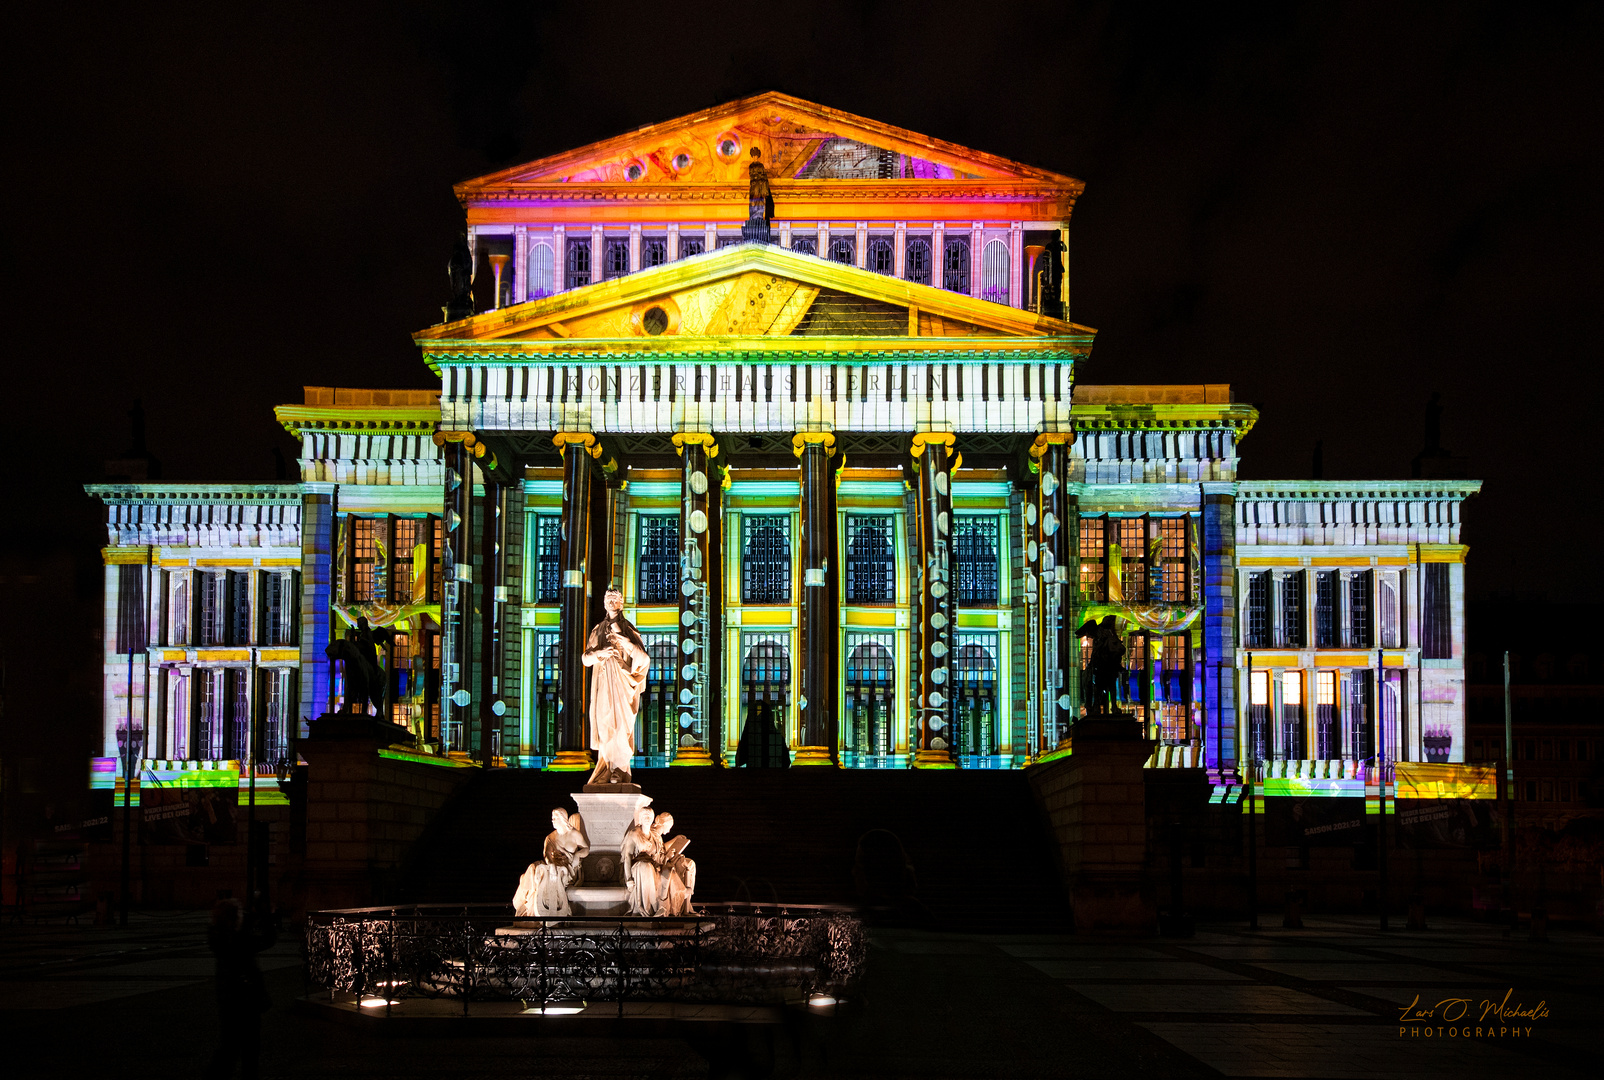 Festival of Lights - Konzerthaus Berlin